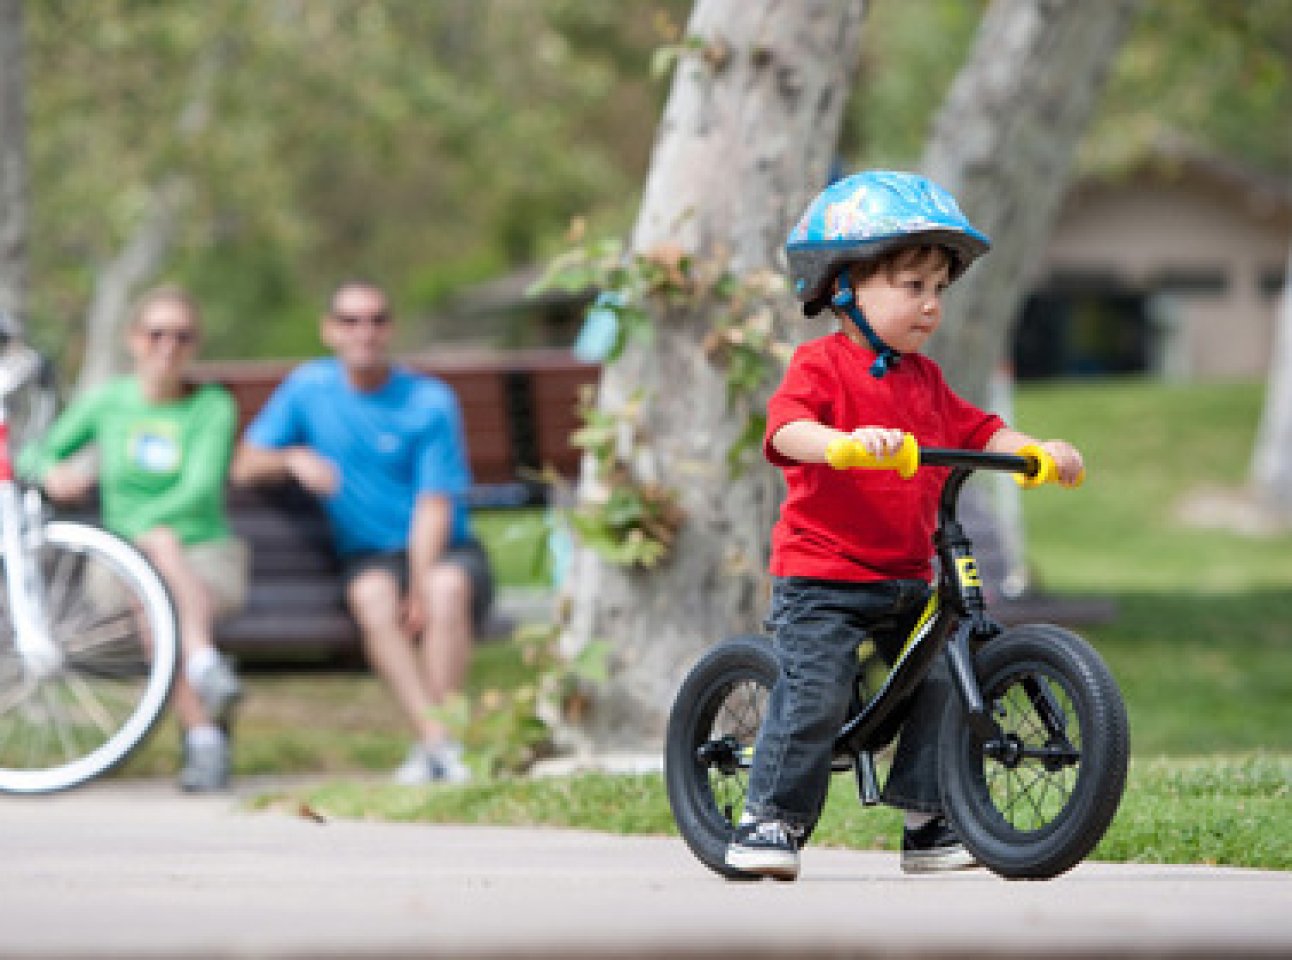 Правильный беговел. Ребенок на большом велосипеде. Дети на больших велосипедах. Маленький ребёнок на большом велосипеде. Велосипед фото для детей.